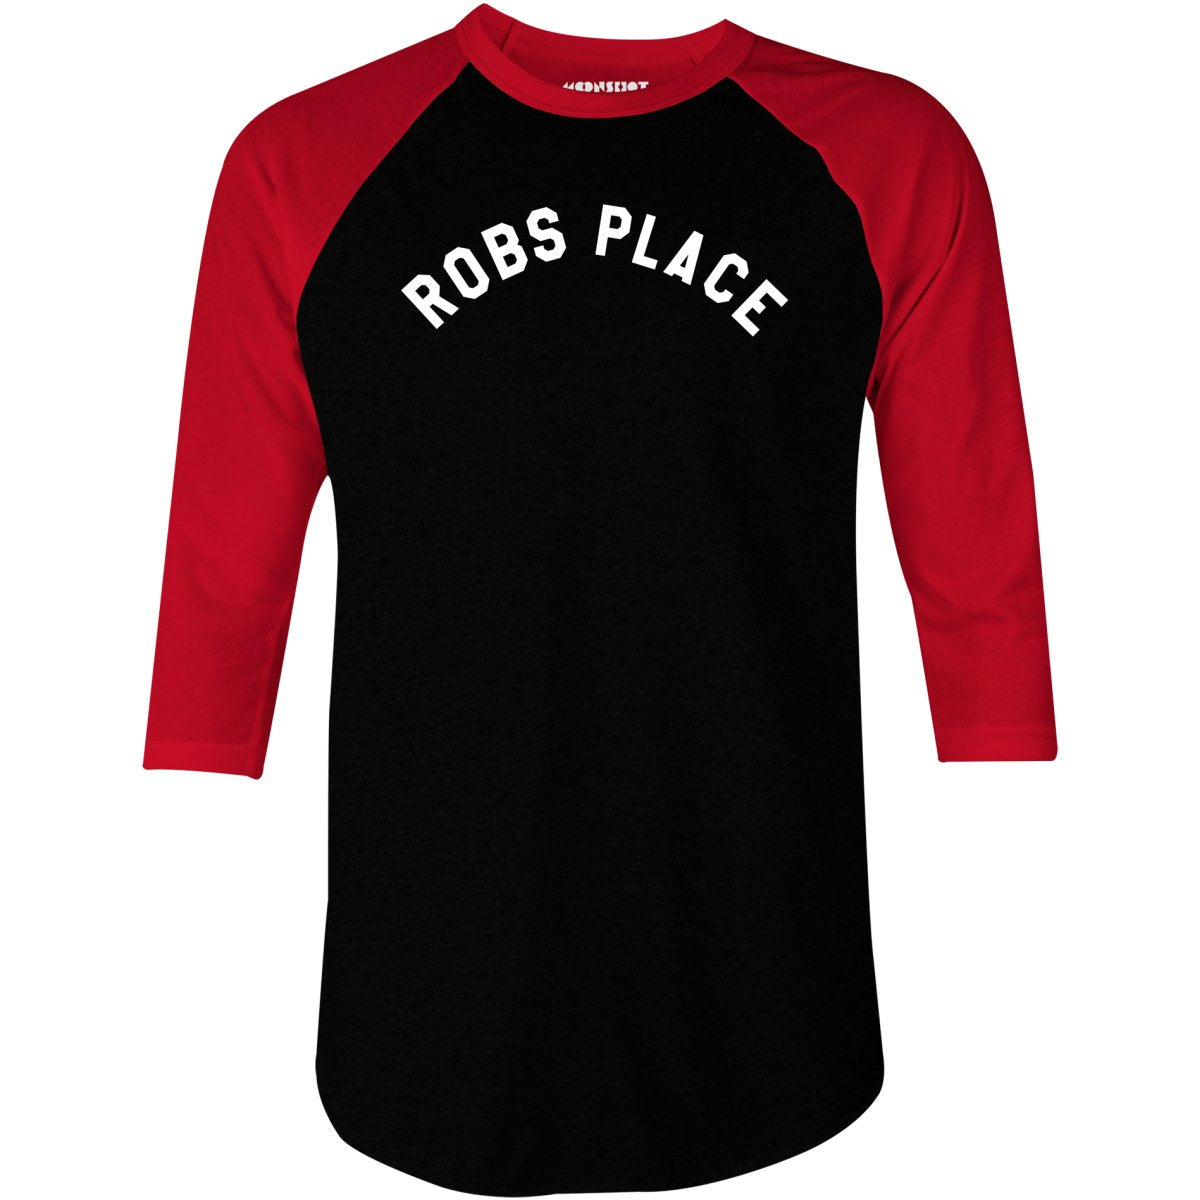 Rob's Place - 3/4 Sleeve Raglan T-Shirt